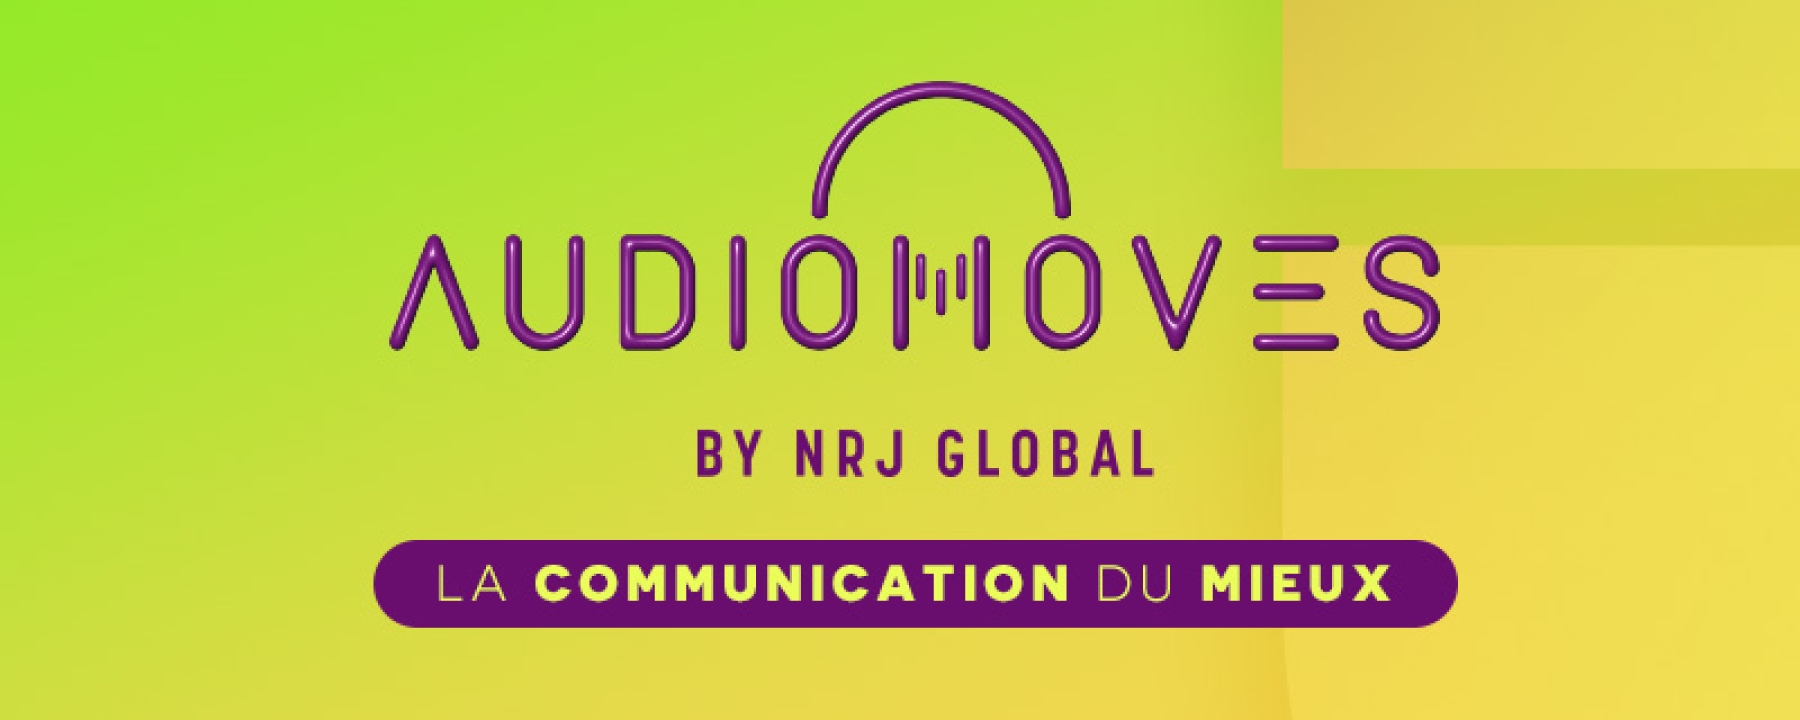 AudioMoves - La communication du mieux